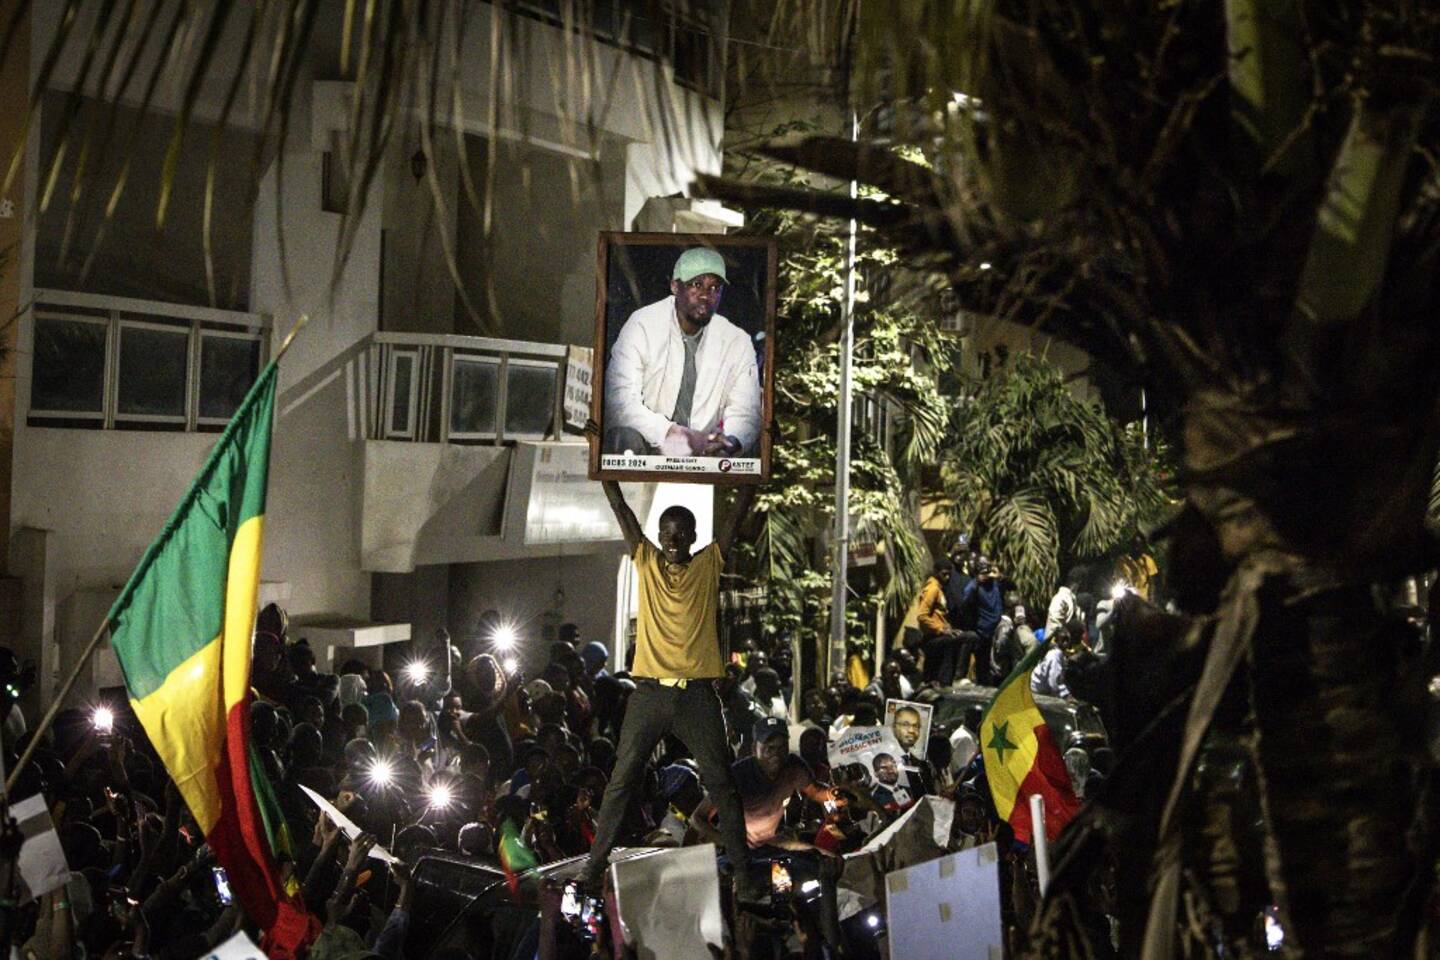 Dakar célèbre la libération d'Ousmane Sonko